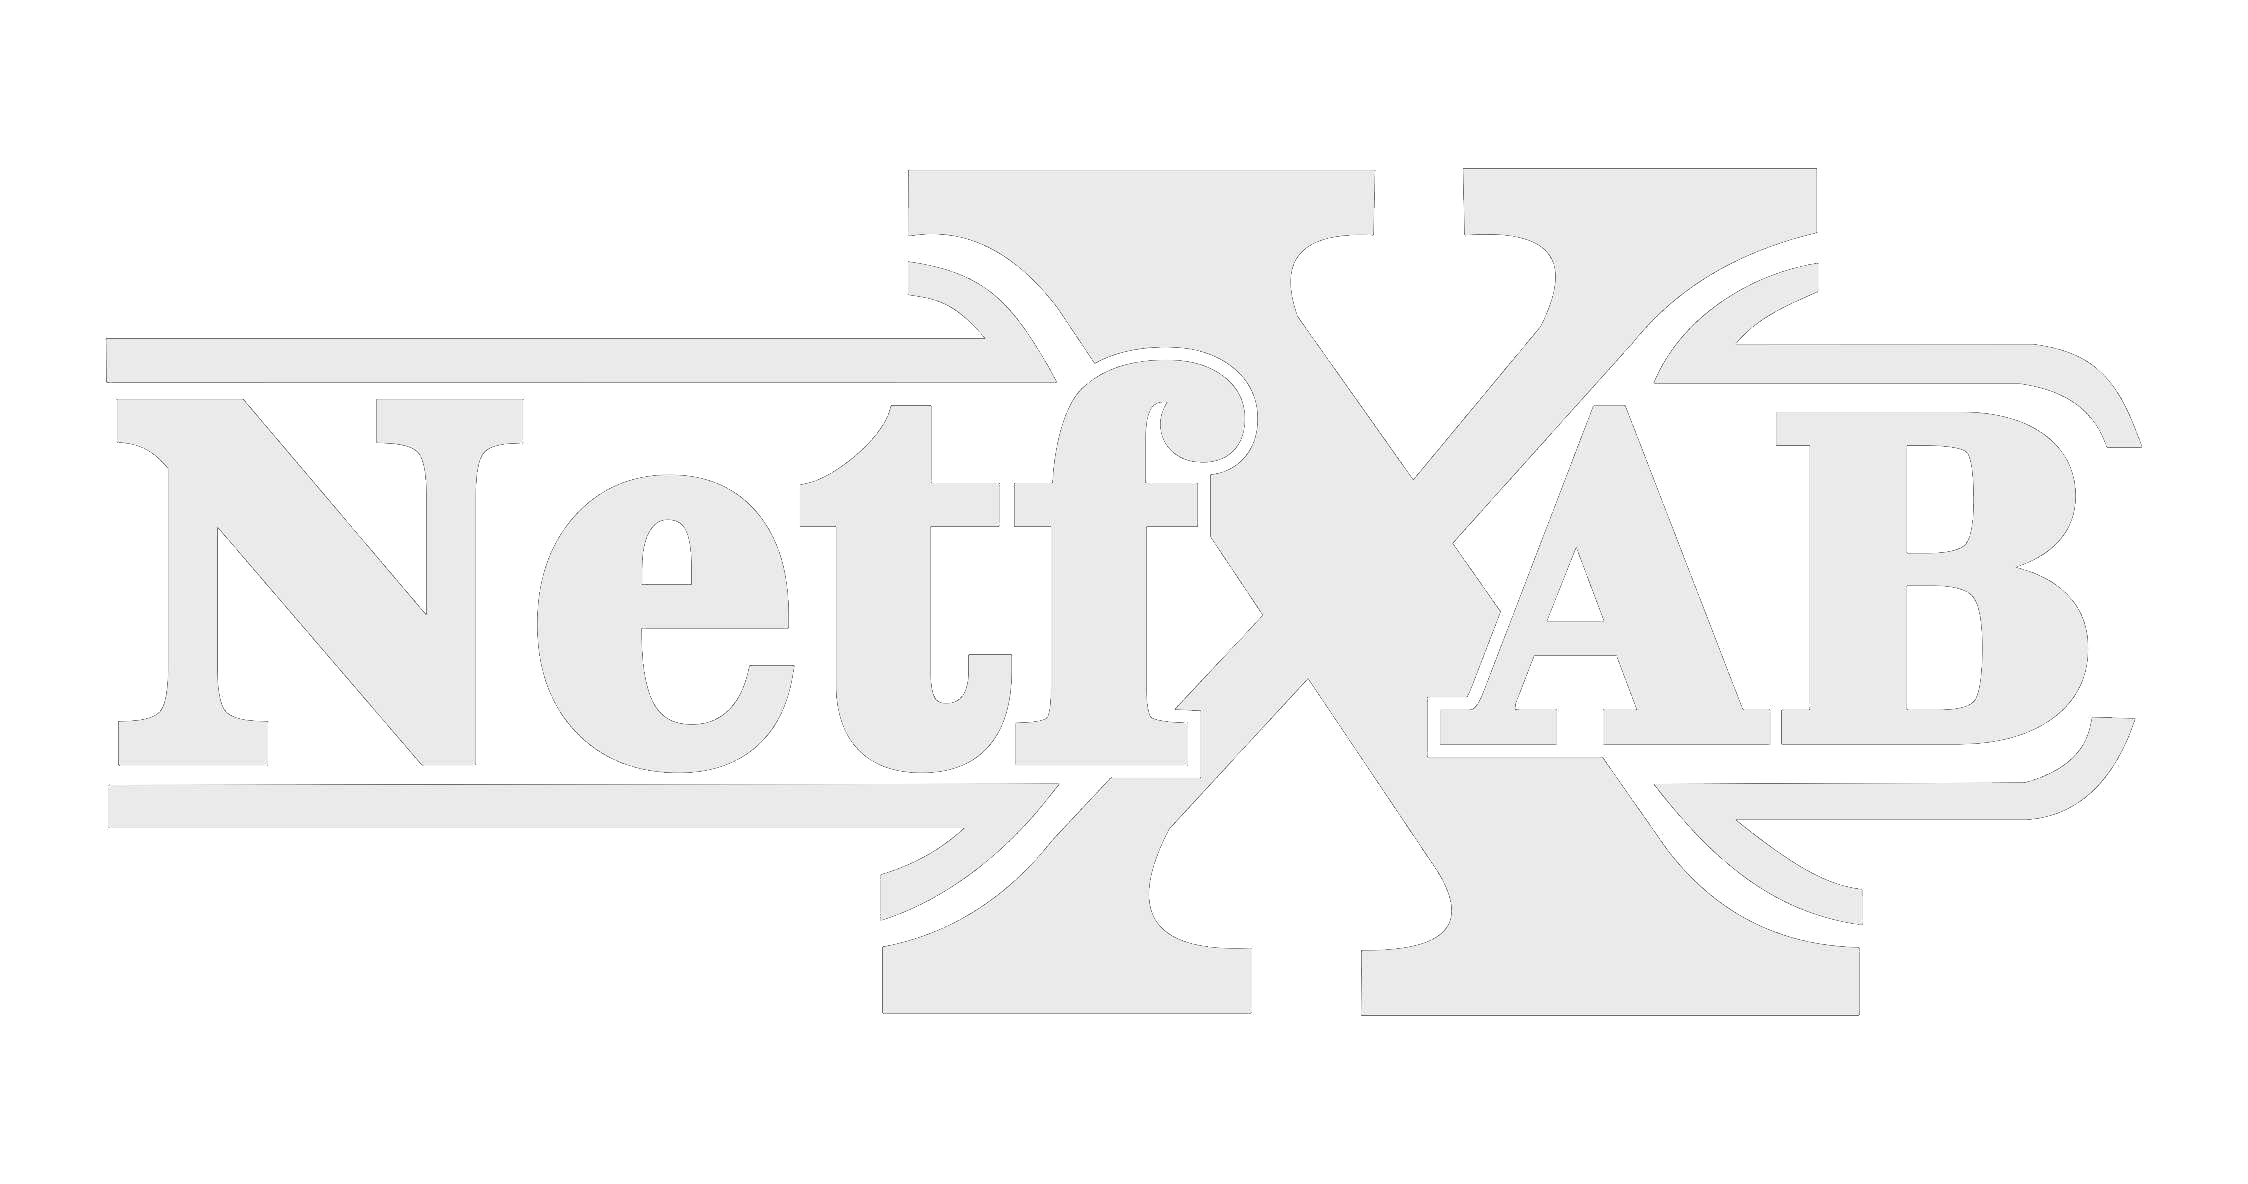 NetFX